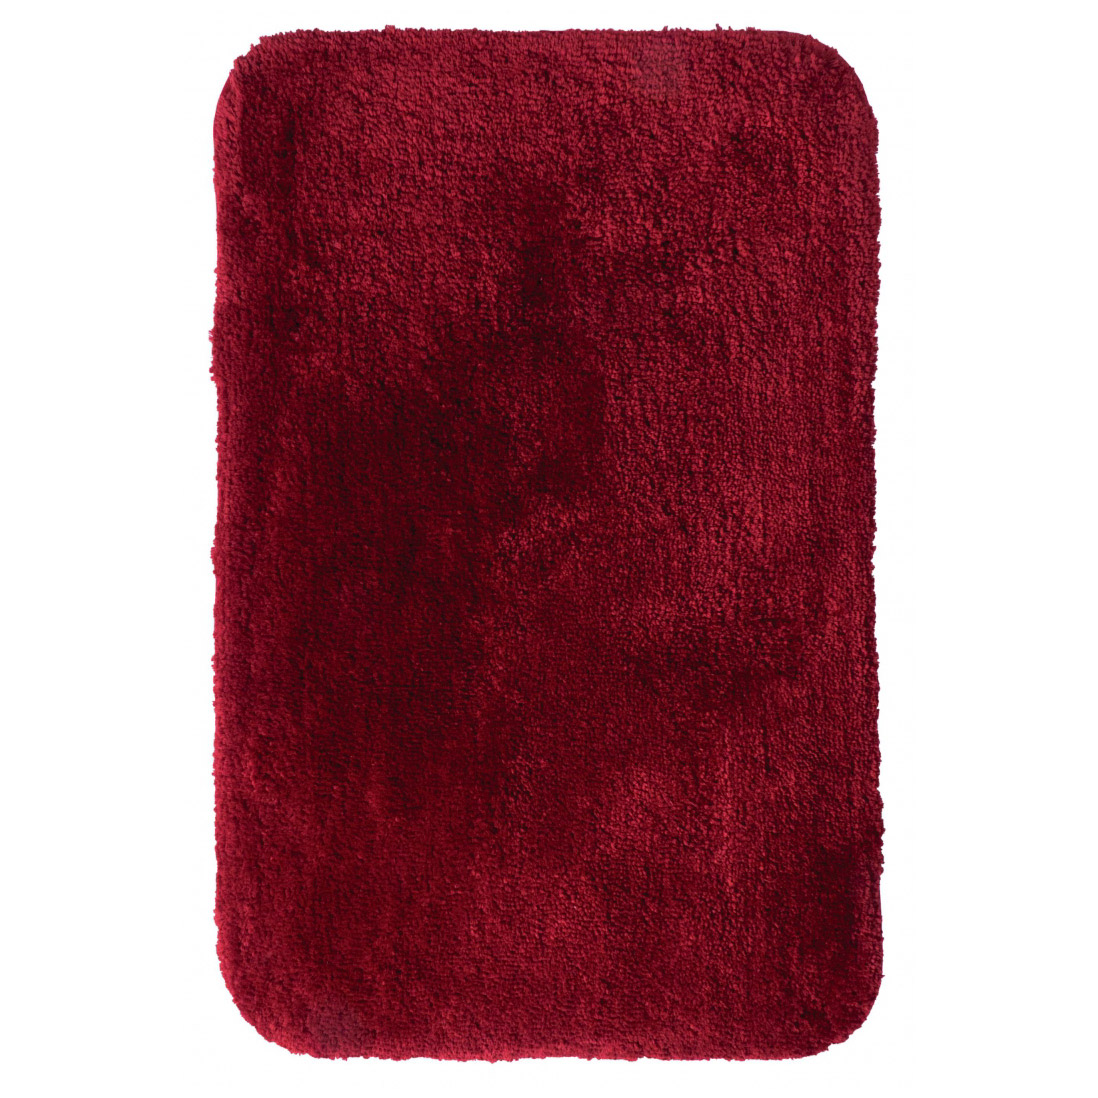 коврик для ванной комнаты ridder chic красный 90х60 см Коврик для ванной комнаты Ridder Chic красный 90х60 см